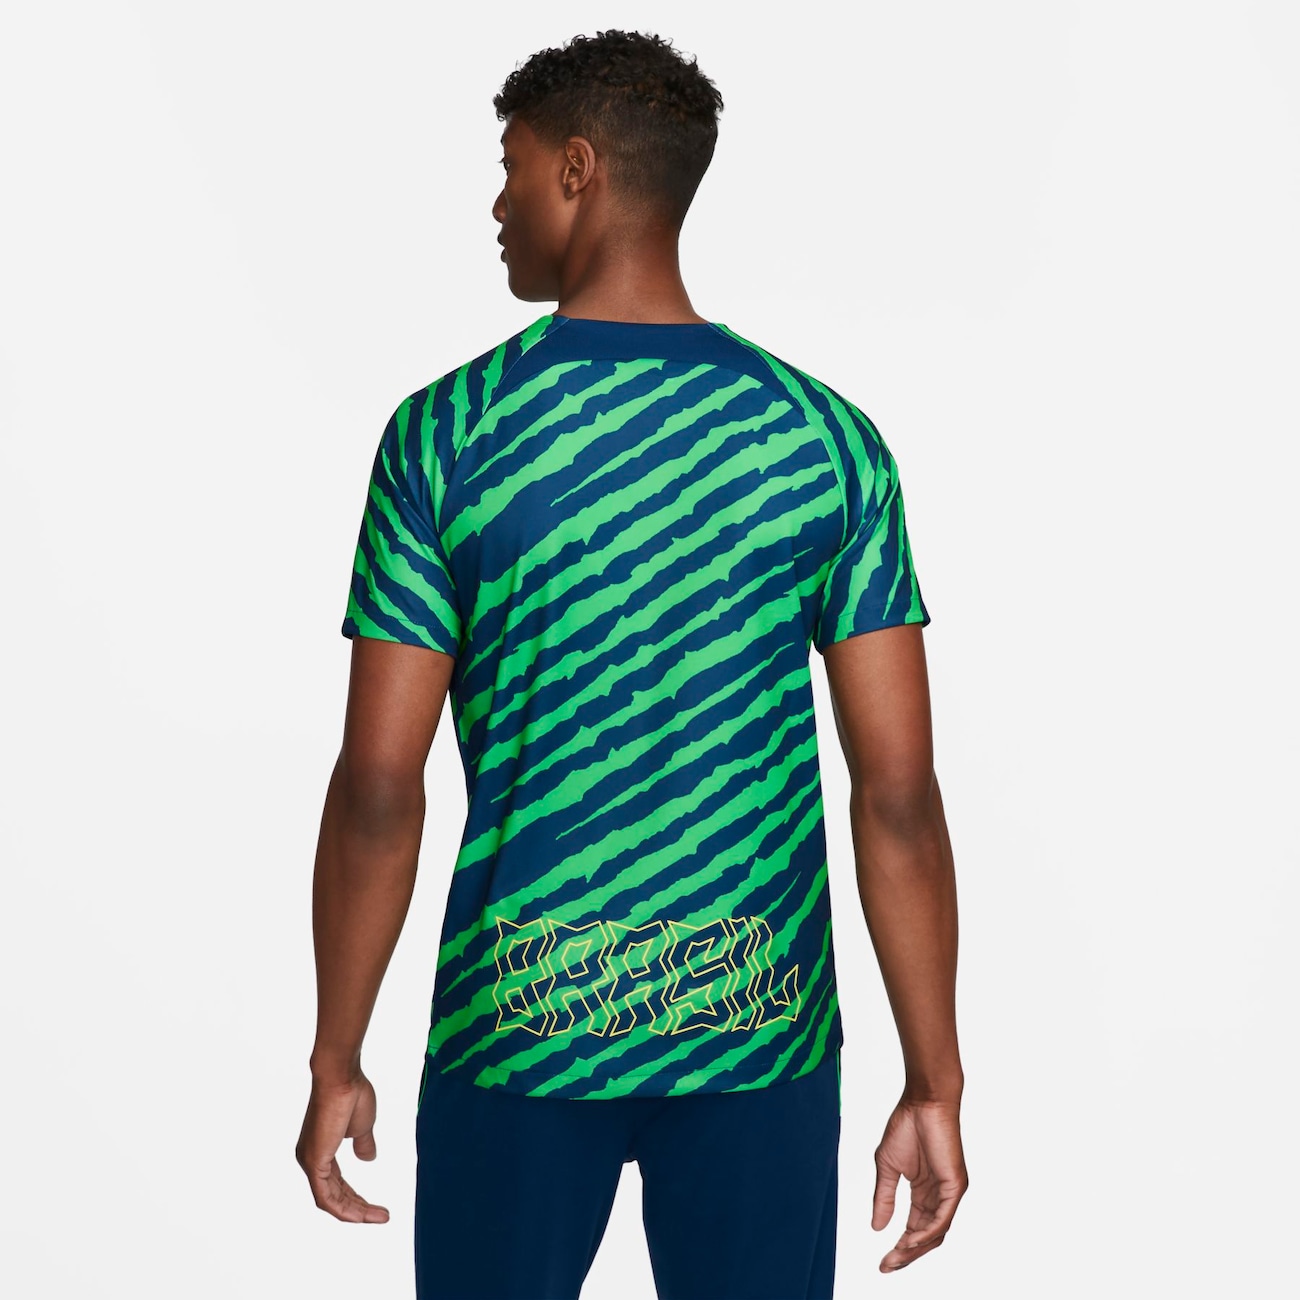 Novas camisas da Seleção Brasileira para Copa 2022 Nike